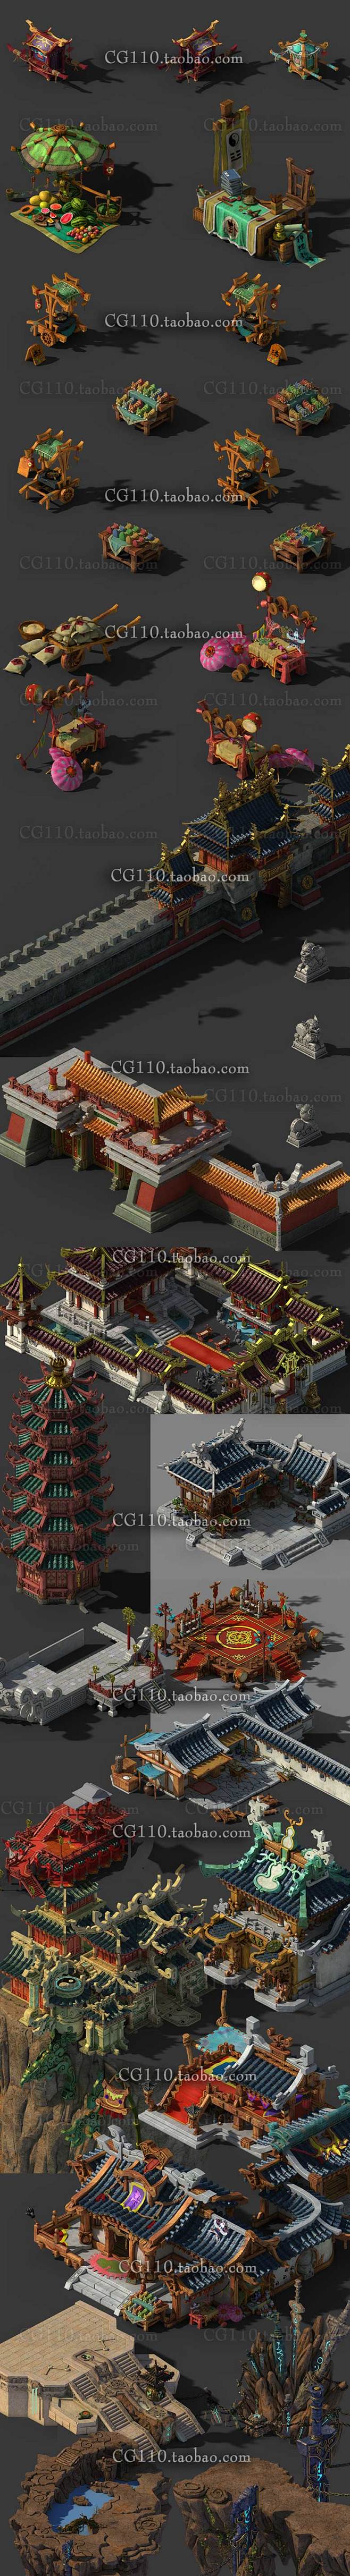 游戏3d模型偏q版中国古代仙侠建筑场景摆件植物美术素材资源max